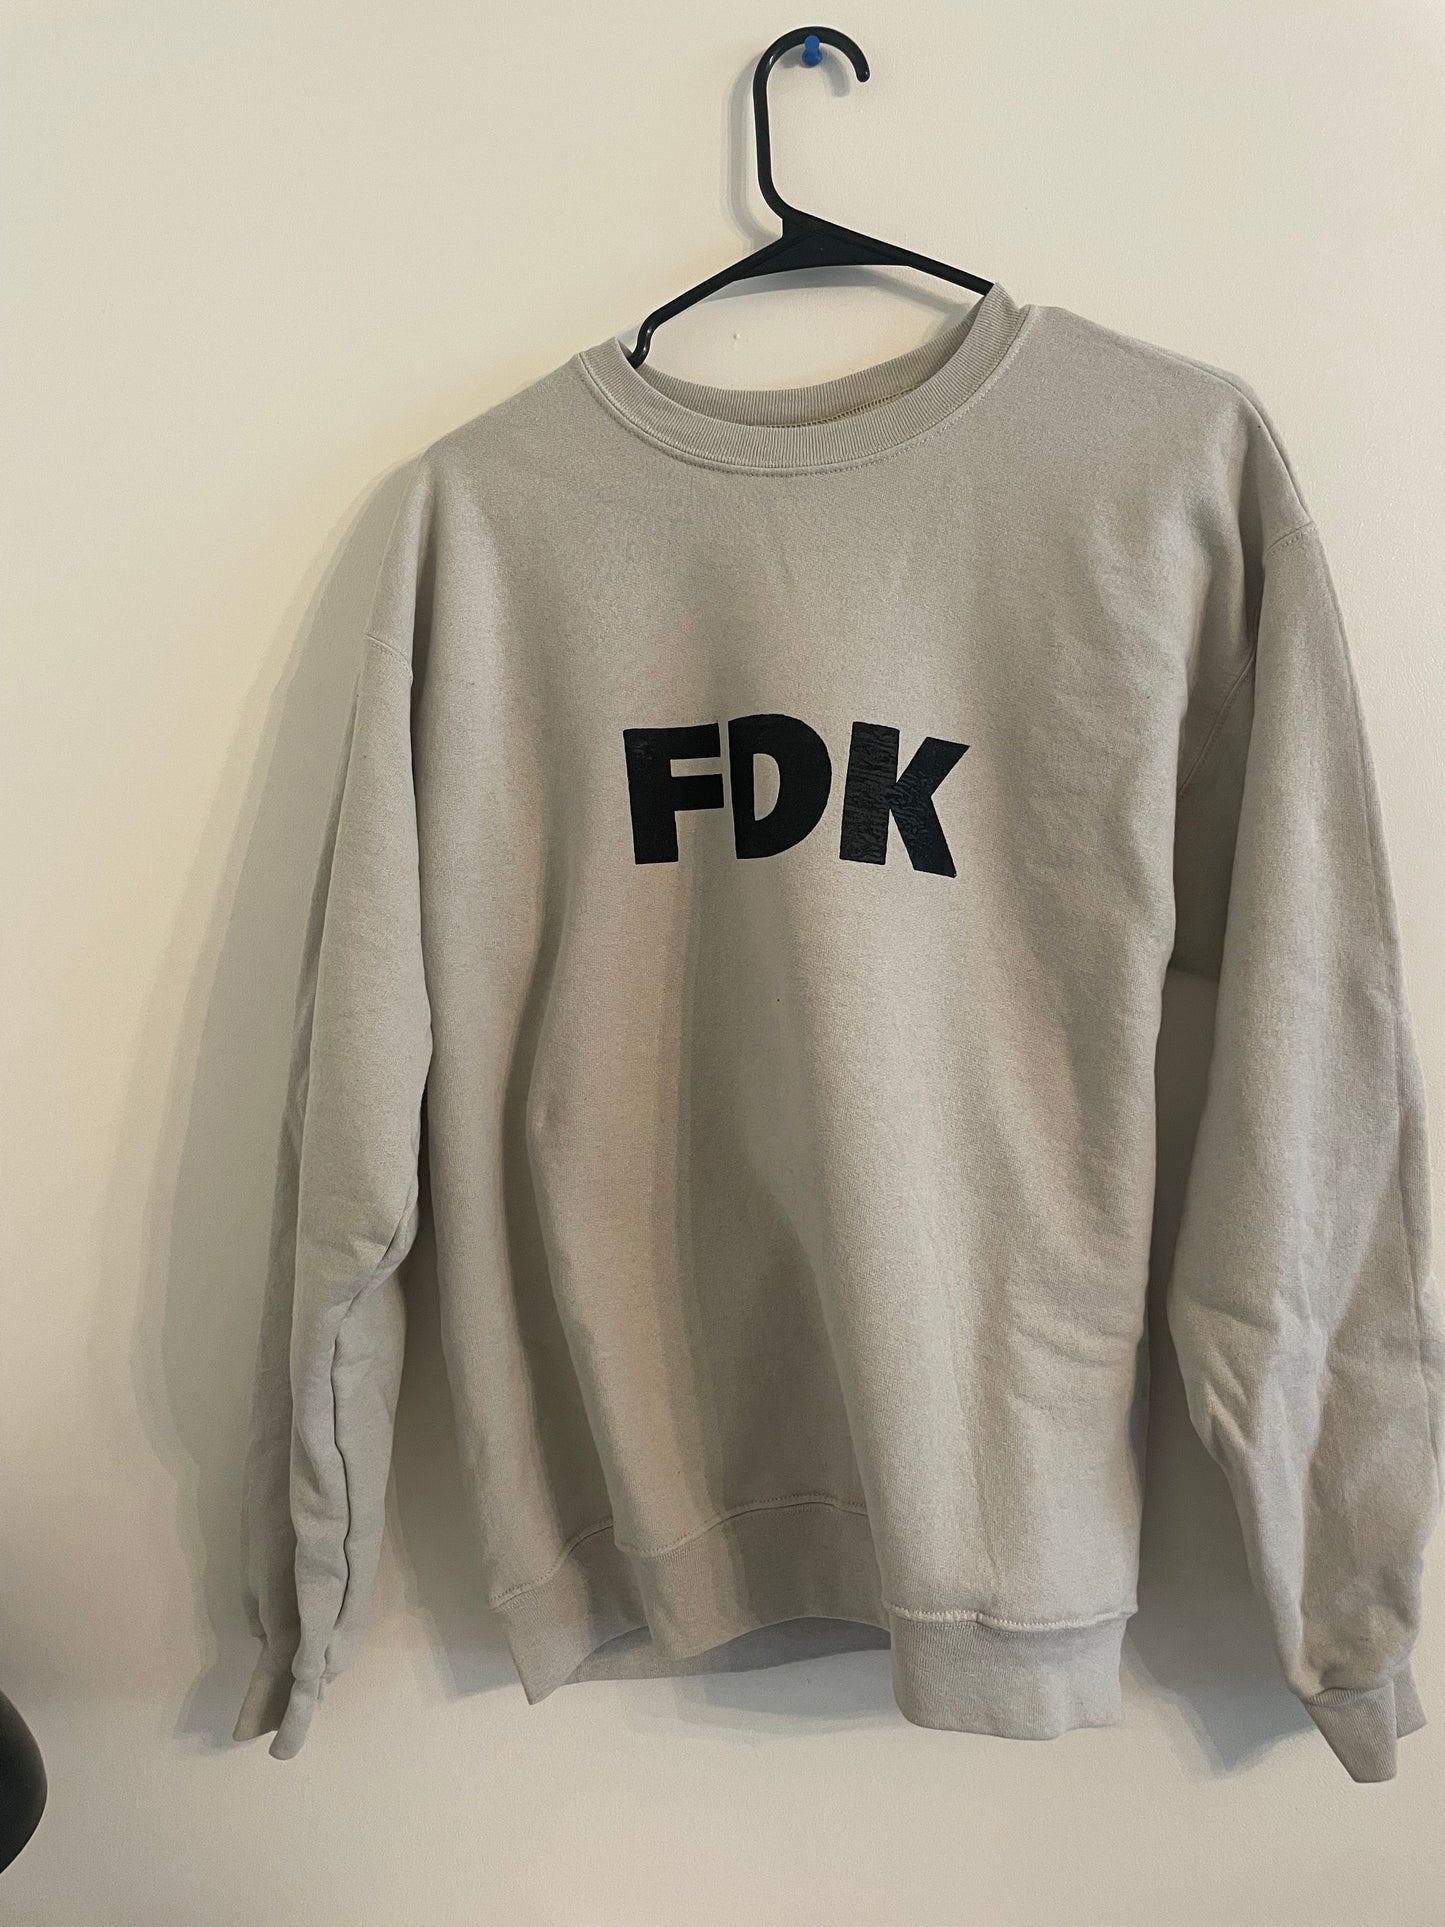 FDK sweatshirt